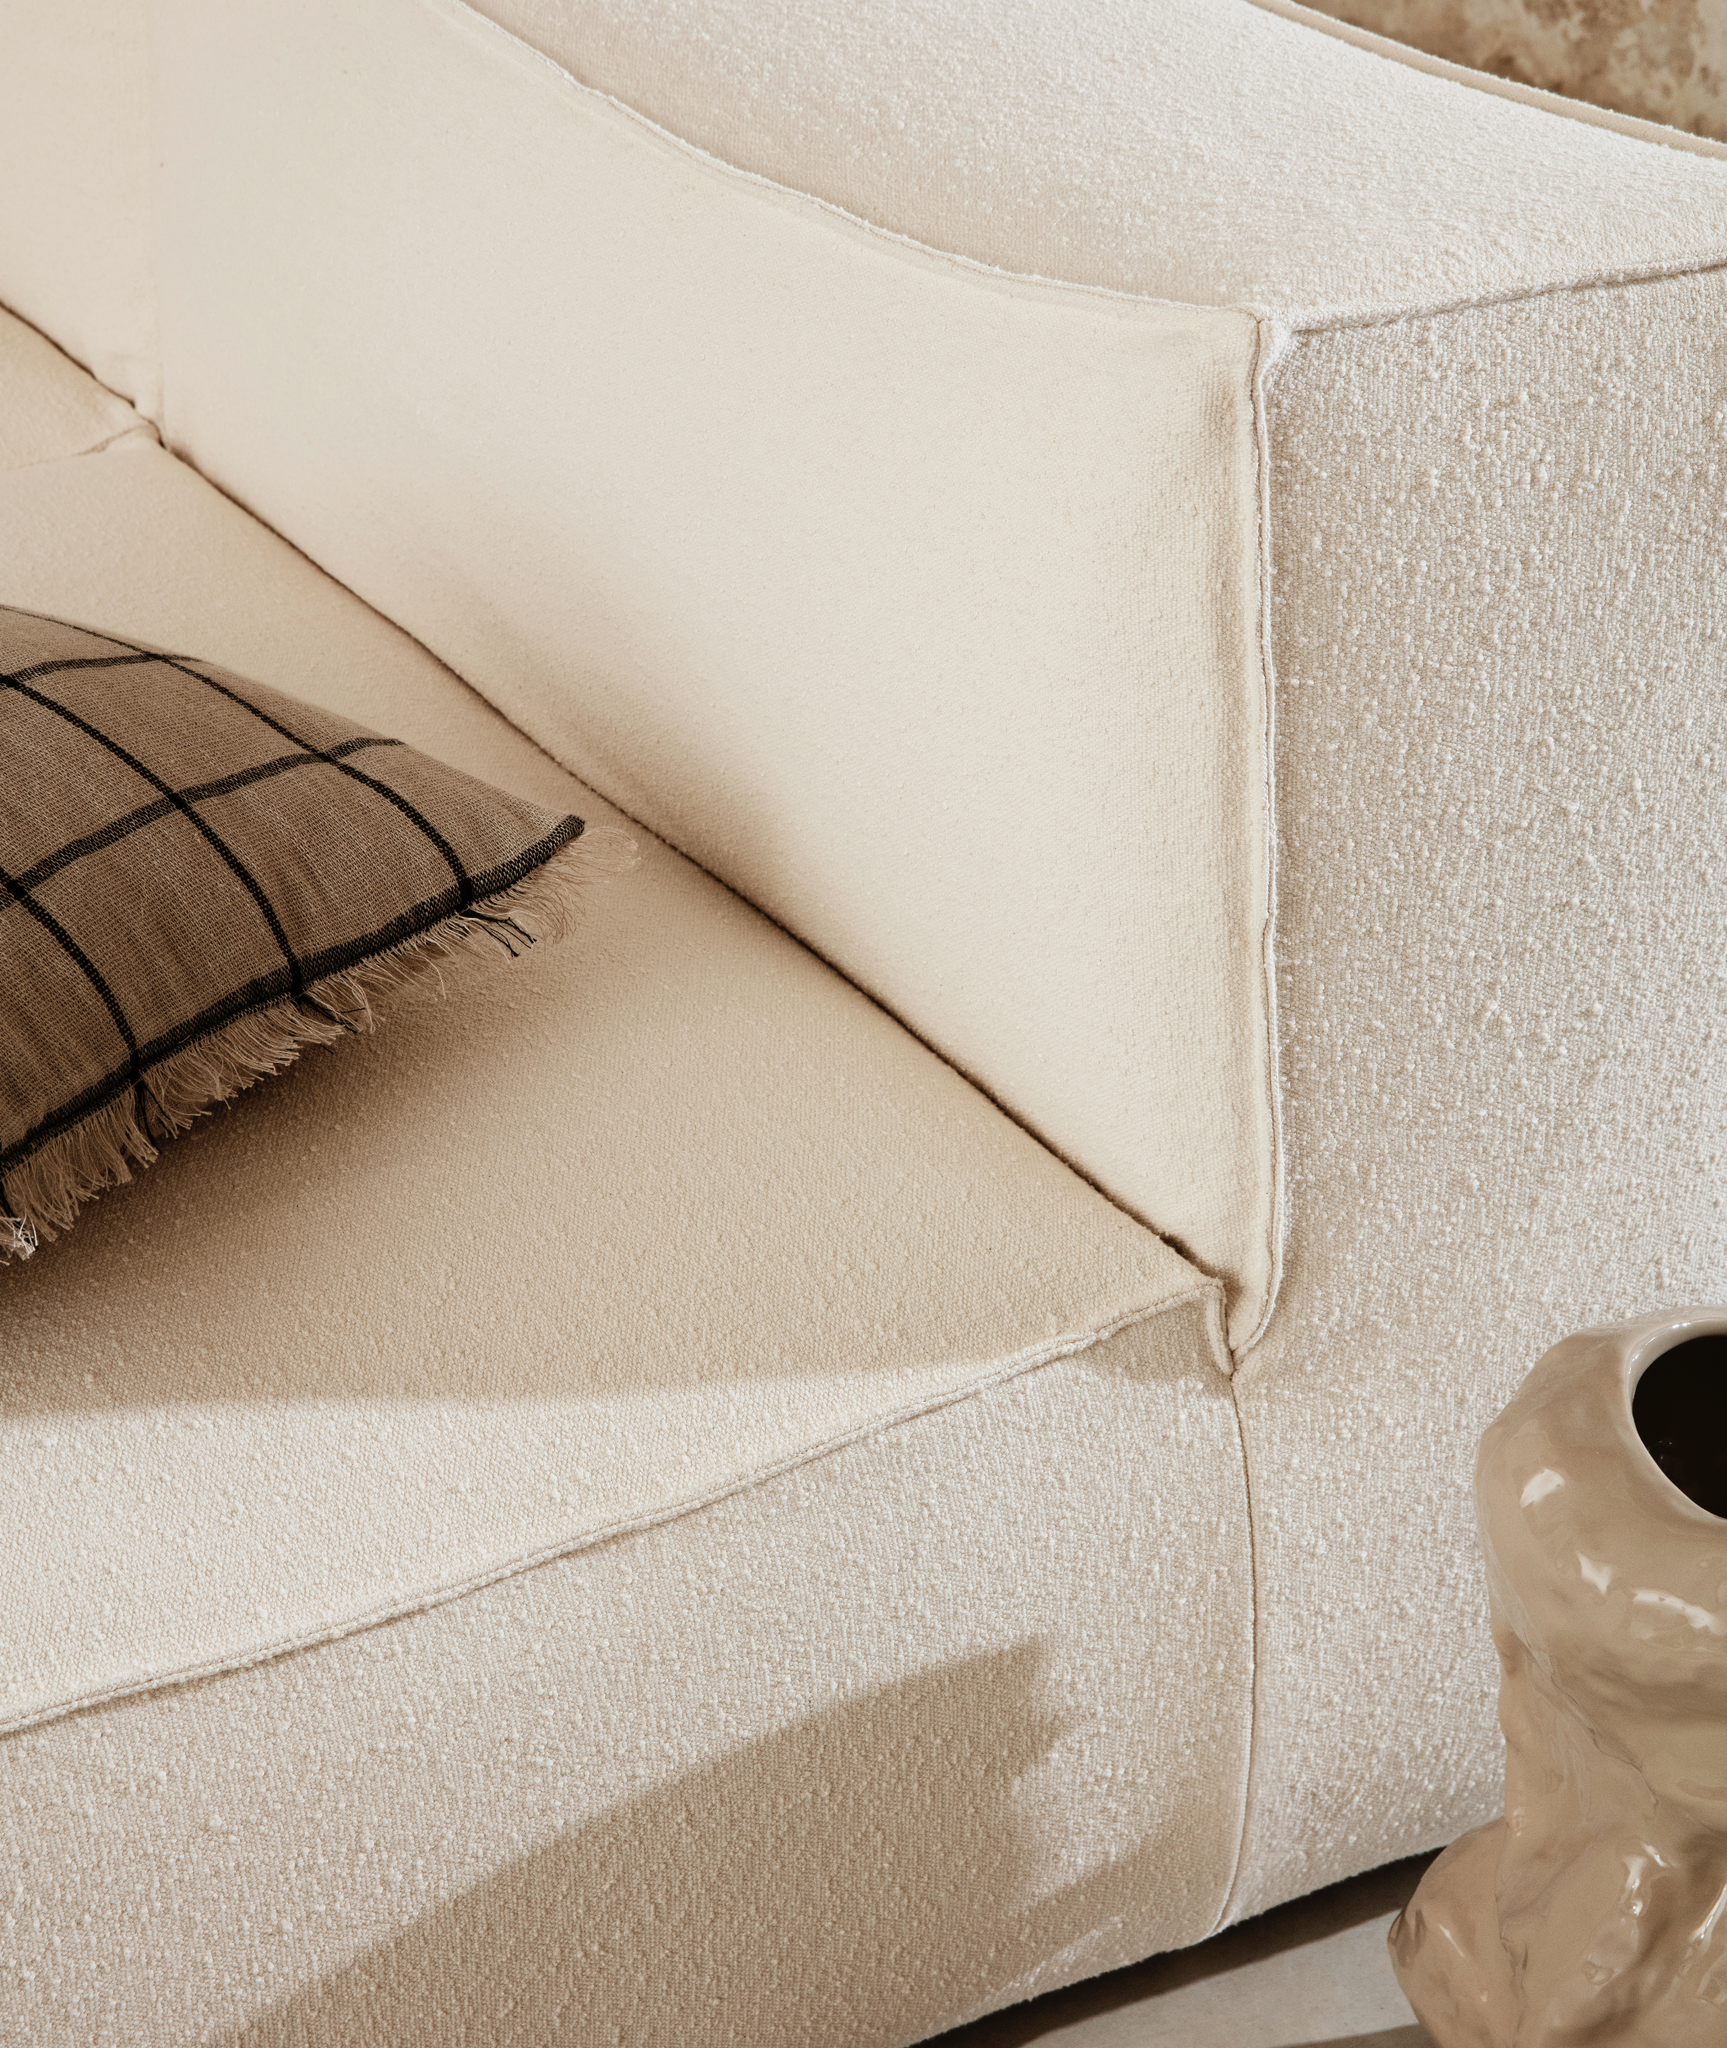 Catena Modular Armrest Sofa - 4 Colors Ferm Living - BEAM // Design Store